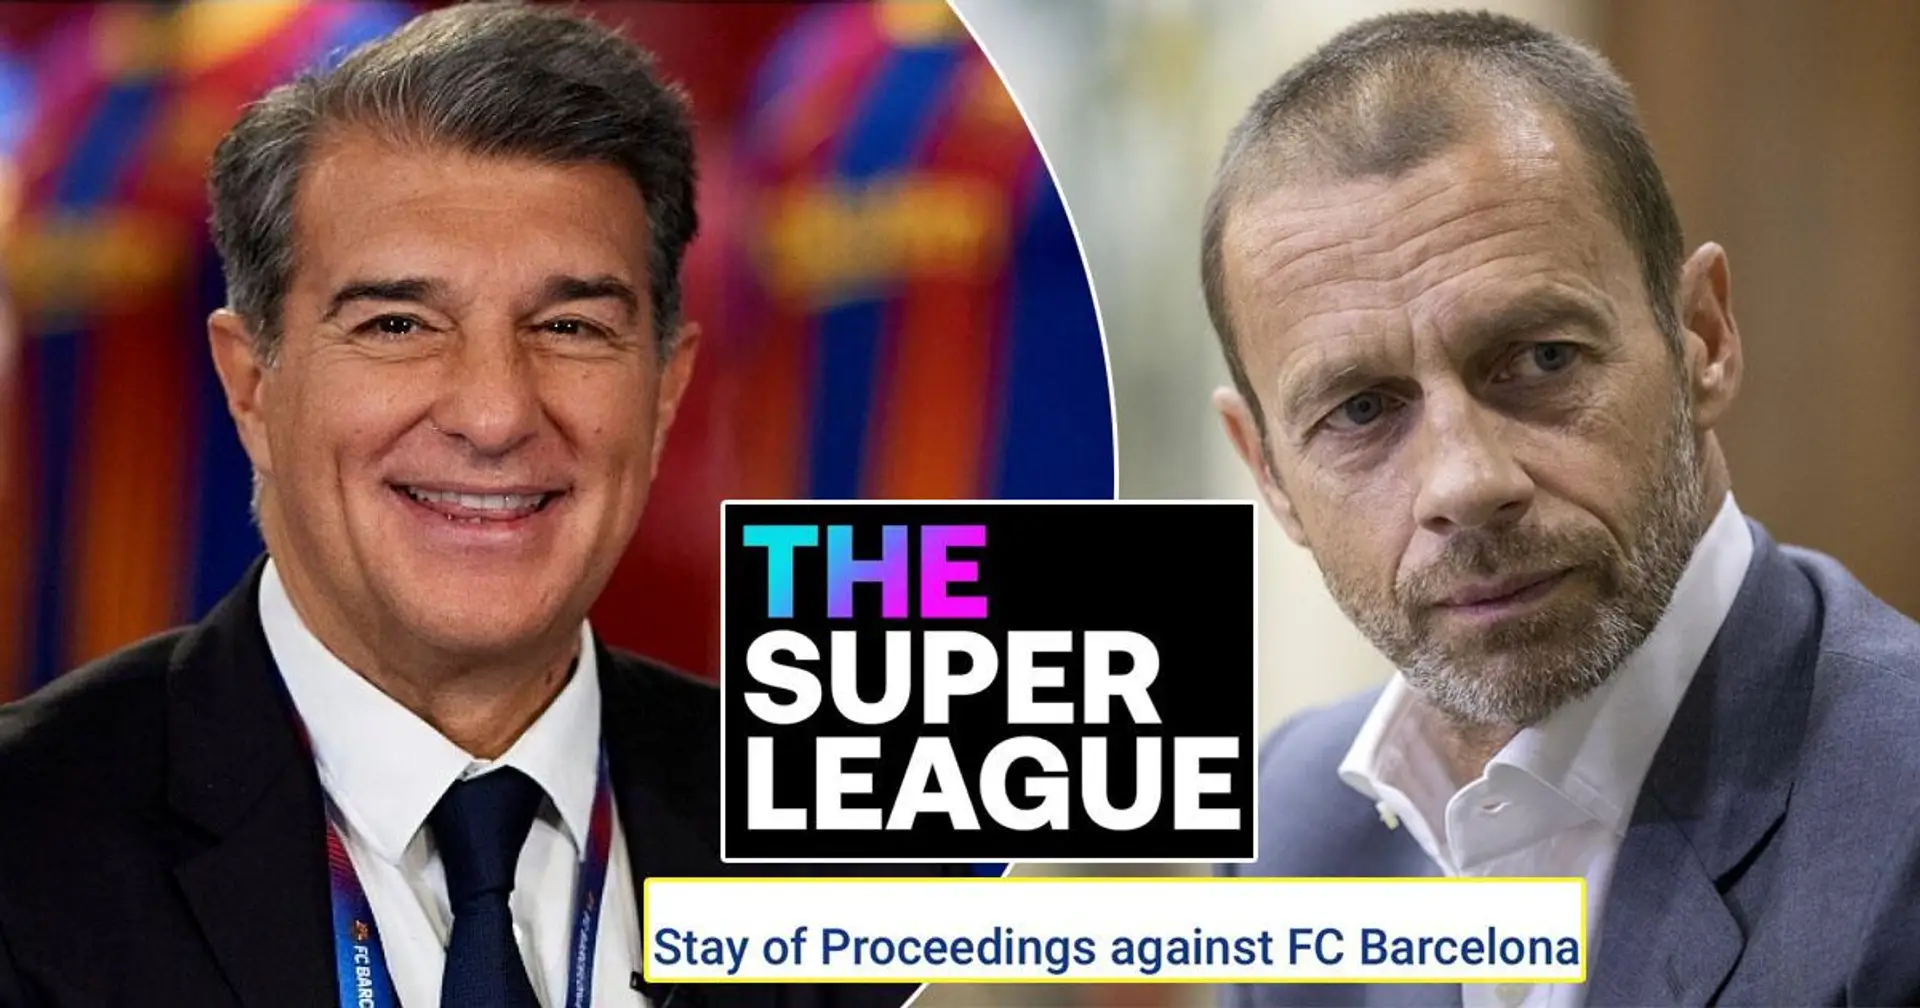 رسمياً : الاتحاد الأوروبي لكرة القدم أوقف إجراءات العقوبة ضد برشلونة بسبب الدوري الممتاز